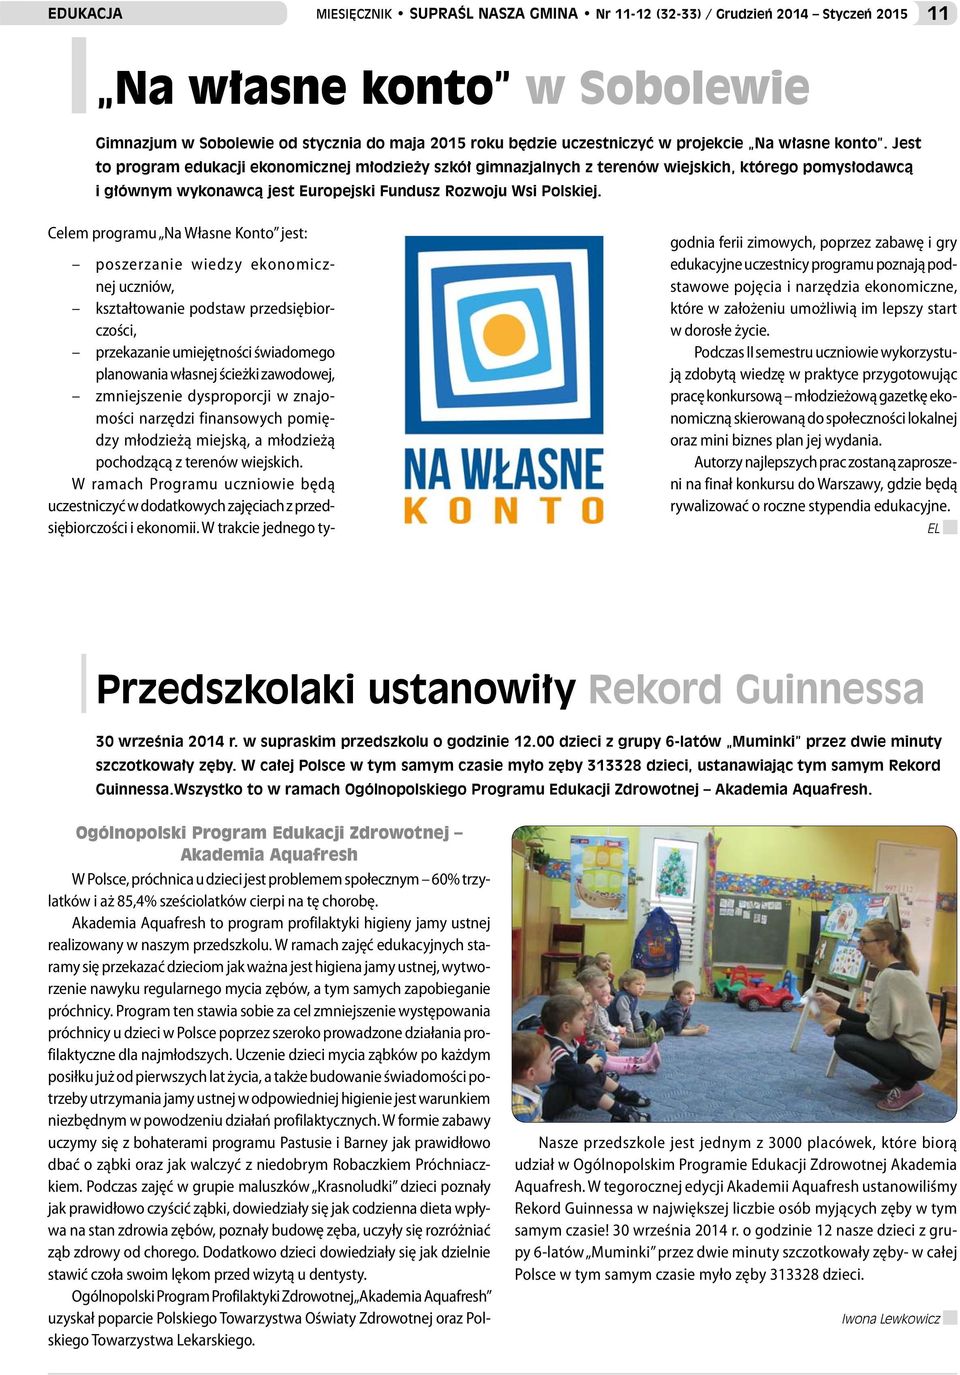 Jest to program edukacji ekonomicznej młodzieży szkół gimnazjalnych z terenów wiejskich, którego pomysłodawcą i głównym wykonawcą jest Europejski Fundusz Rozwoju Wsi Polskiej.